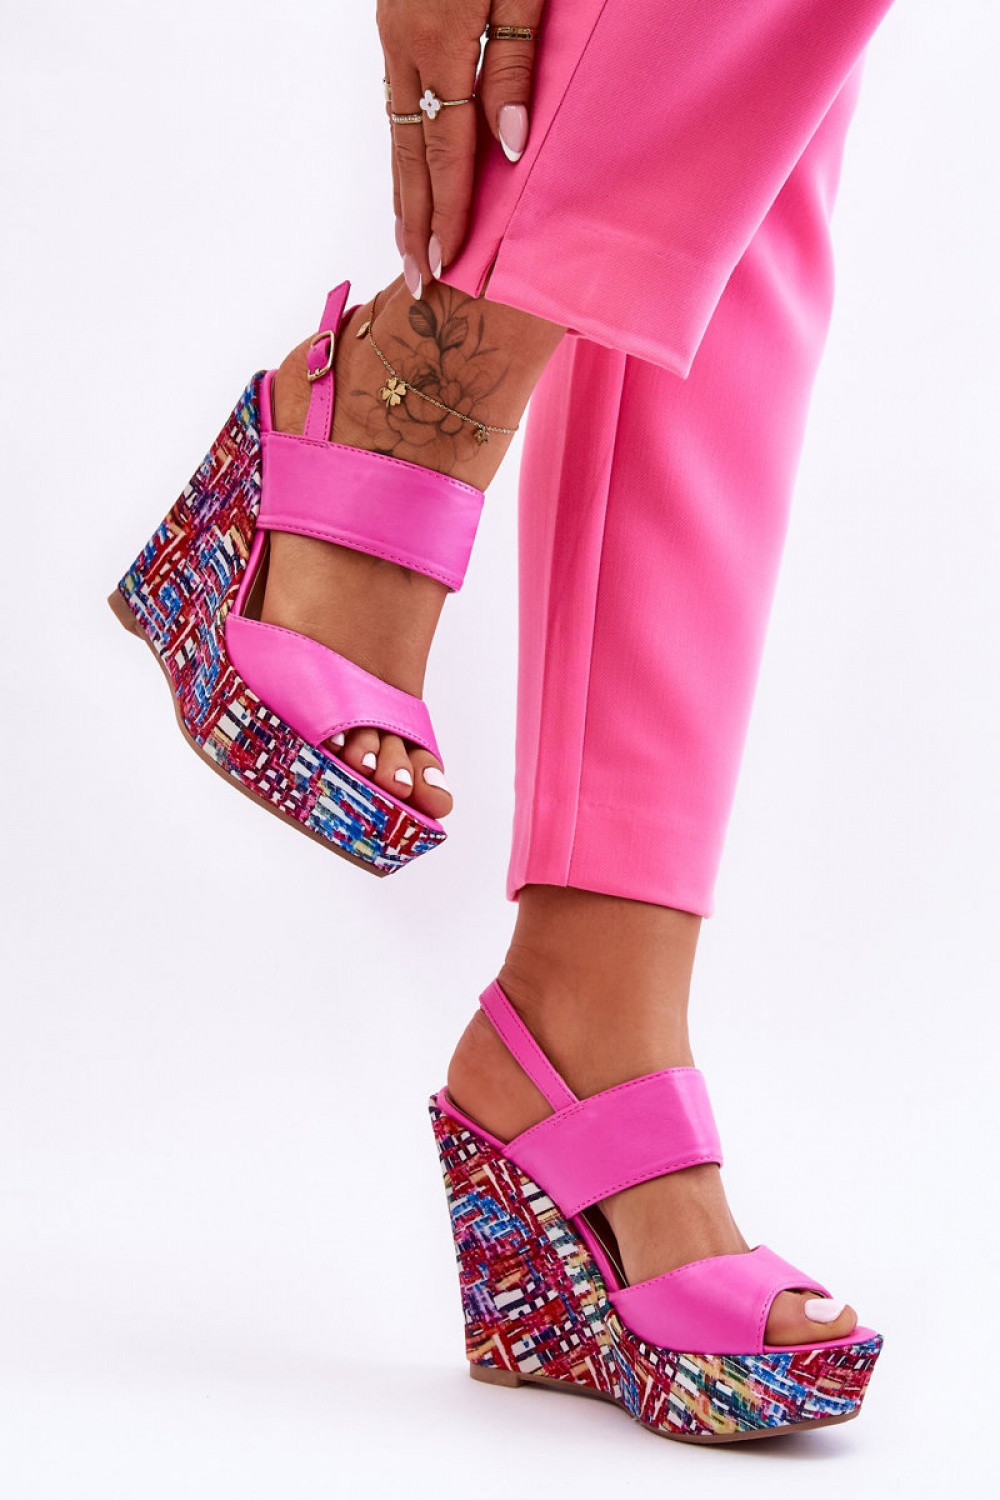 Dámské sandály na klínech S-1102 Tmavě růžová mix - Renda růžová -mix barev 37